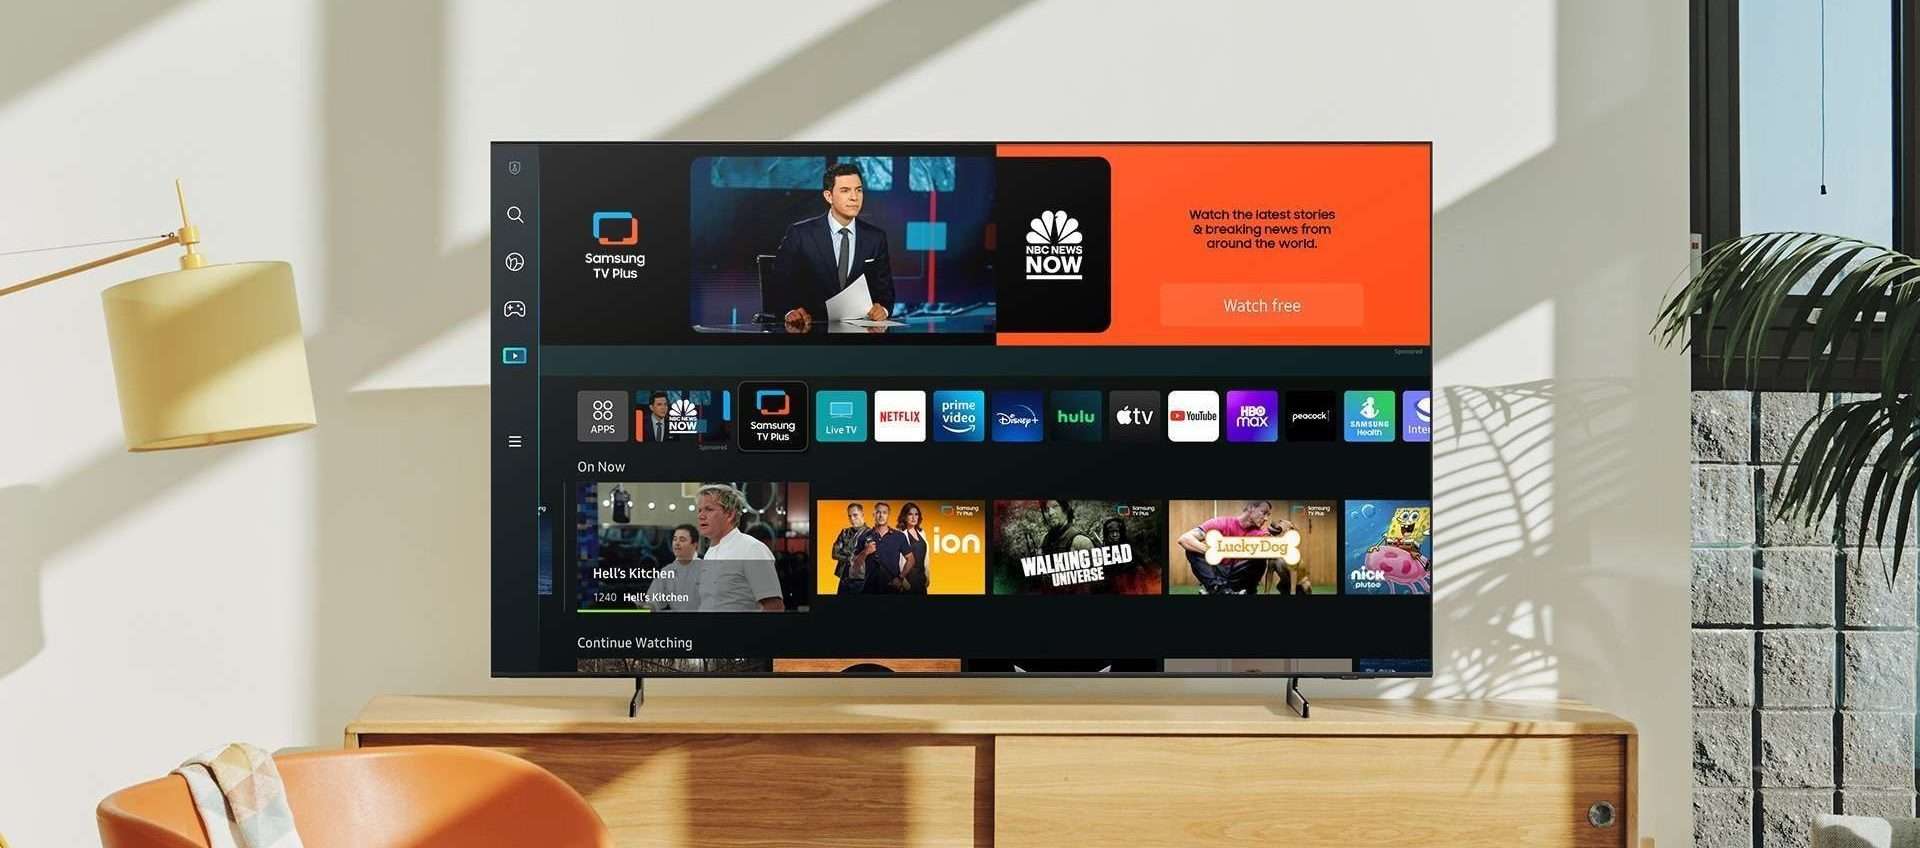 Questa Smart TV di Samsung è in offerta su Amazon a 399€: è un OTTIMO ACQUISTO